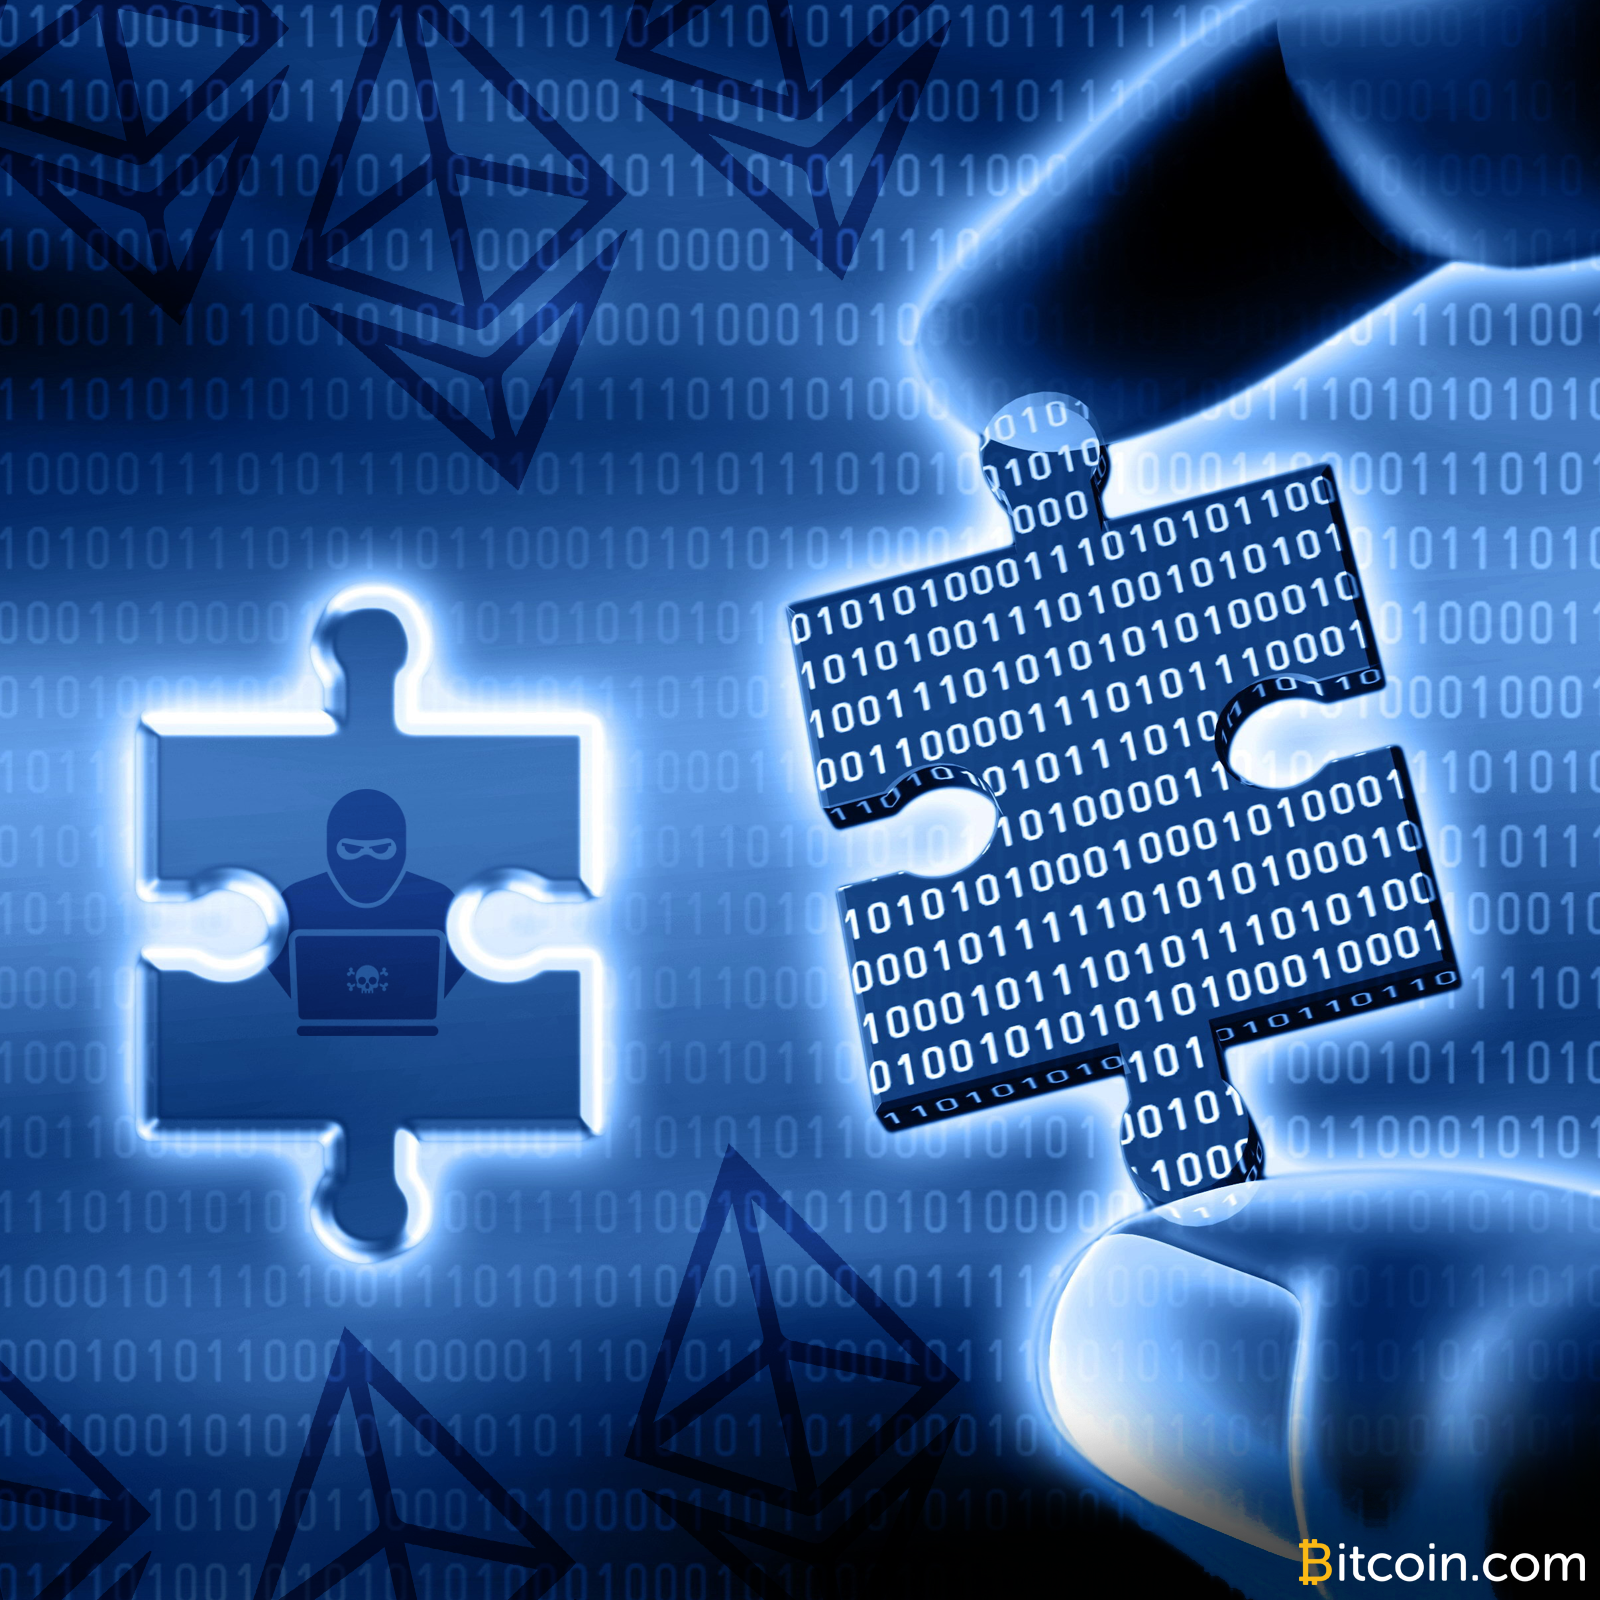 Ethereum Wallet Parity Hit by Second Critical Vulnerability – $152 Million Frozen